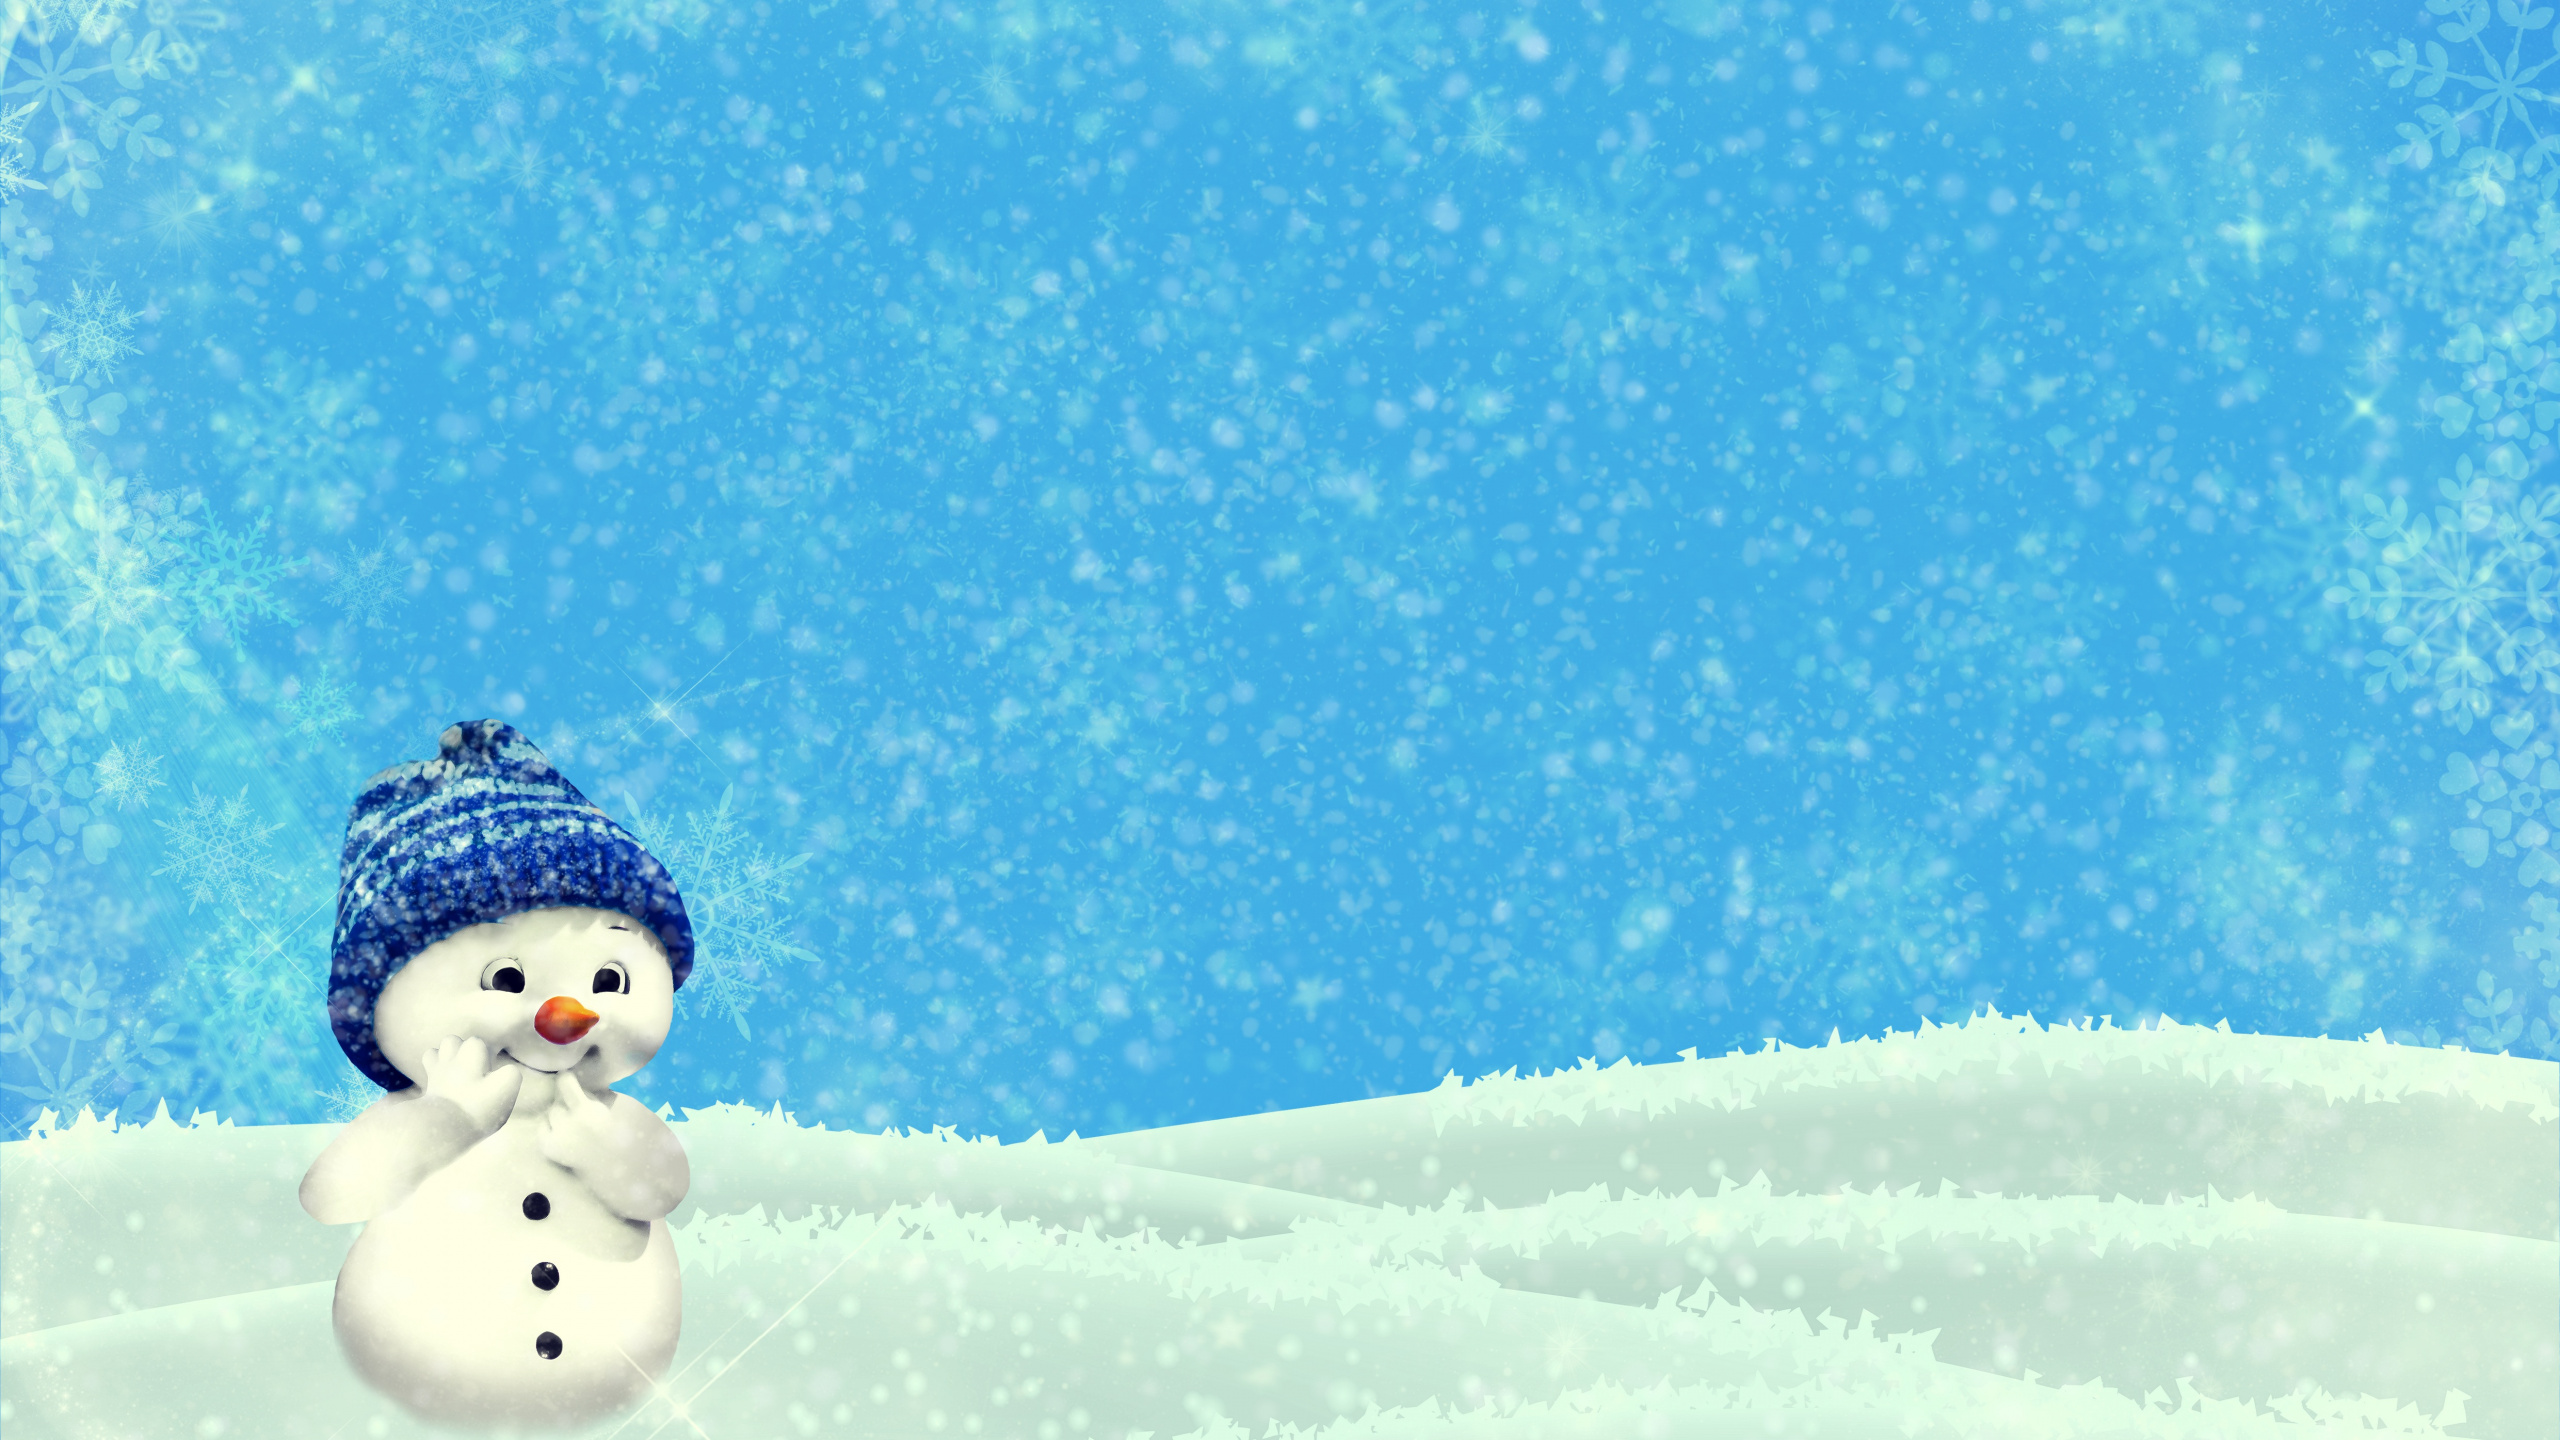 Schneemann, Weihnachten, Schnee, Winter, Einfrieren. Wallpaper in 2560x1440 Resolution